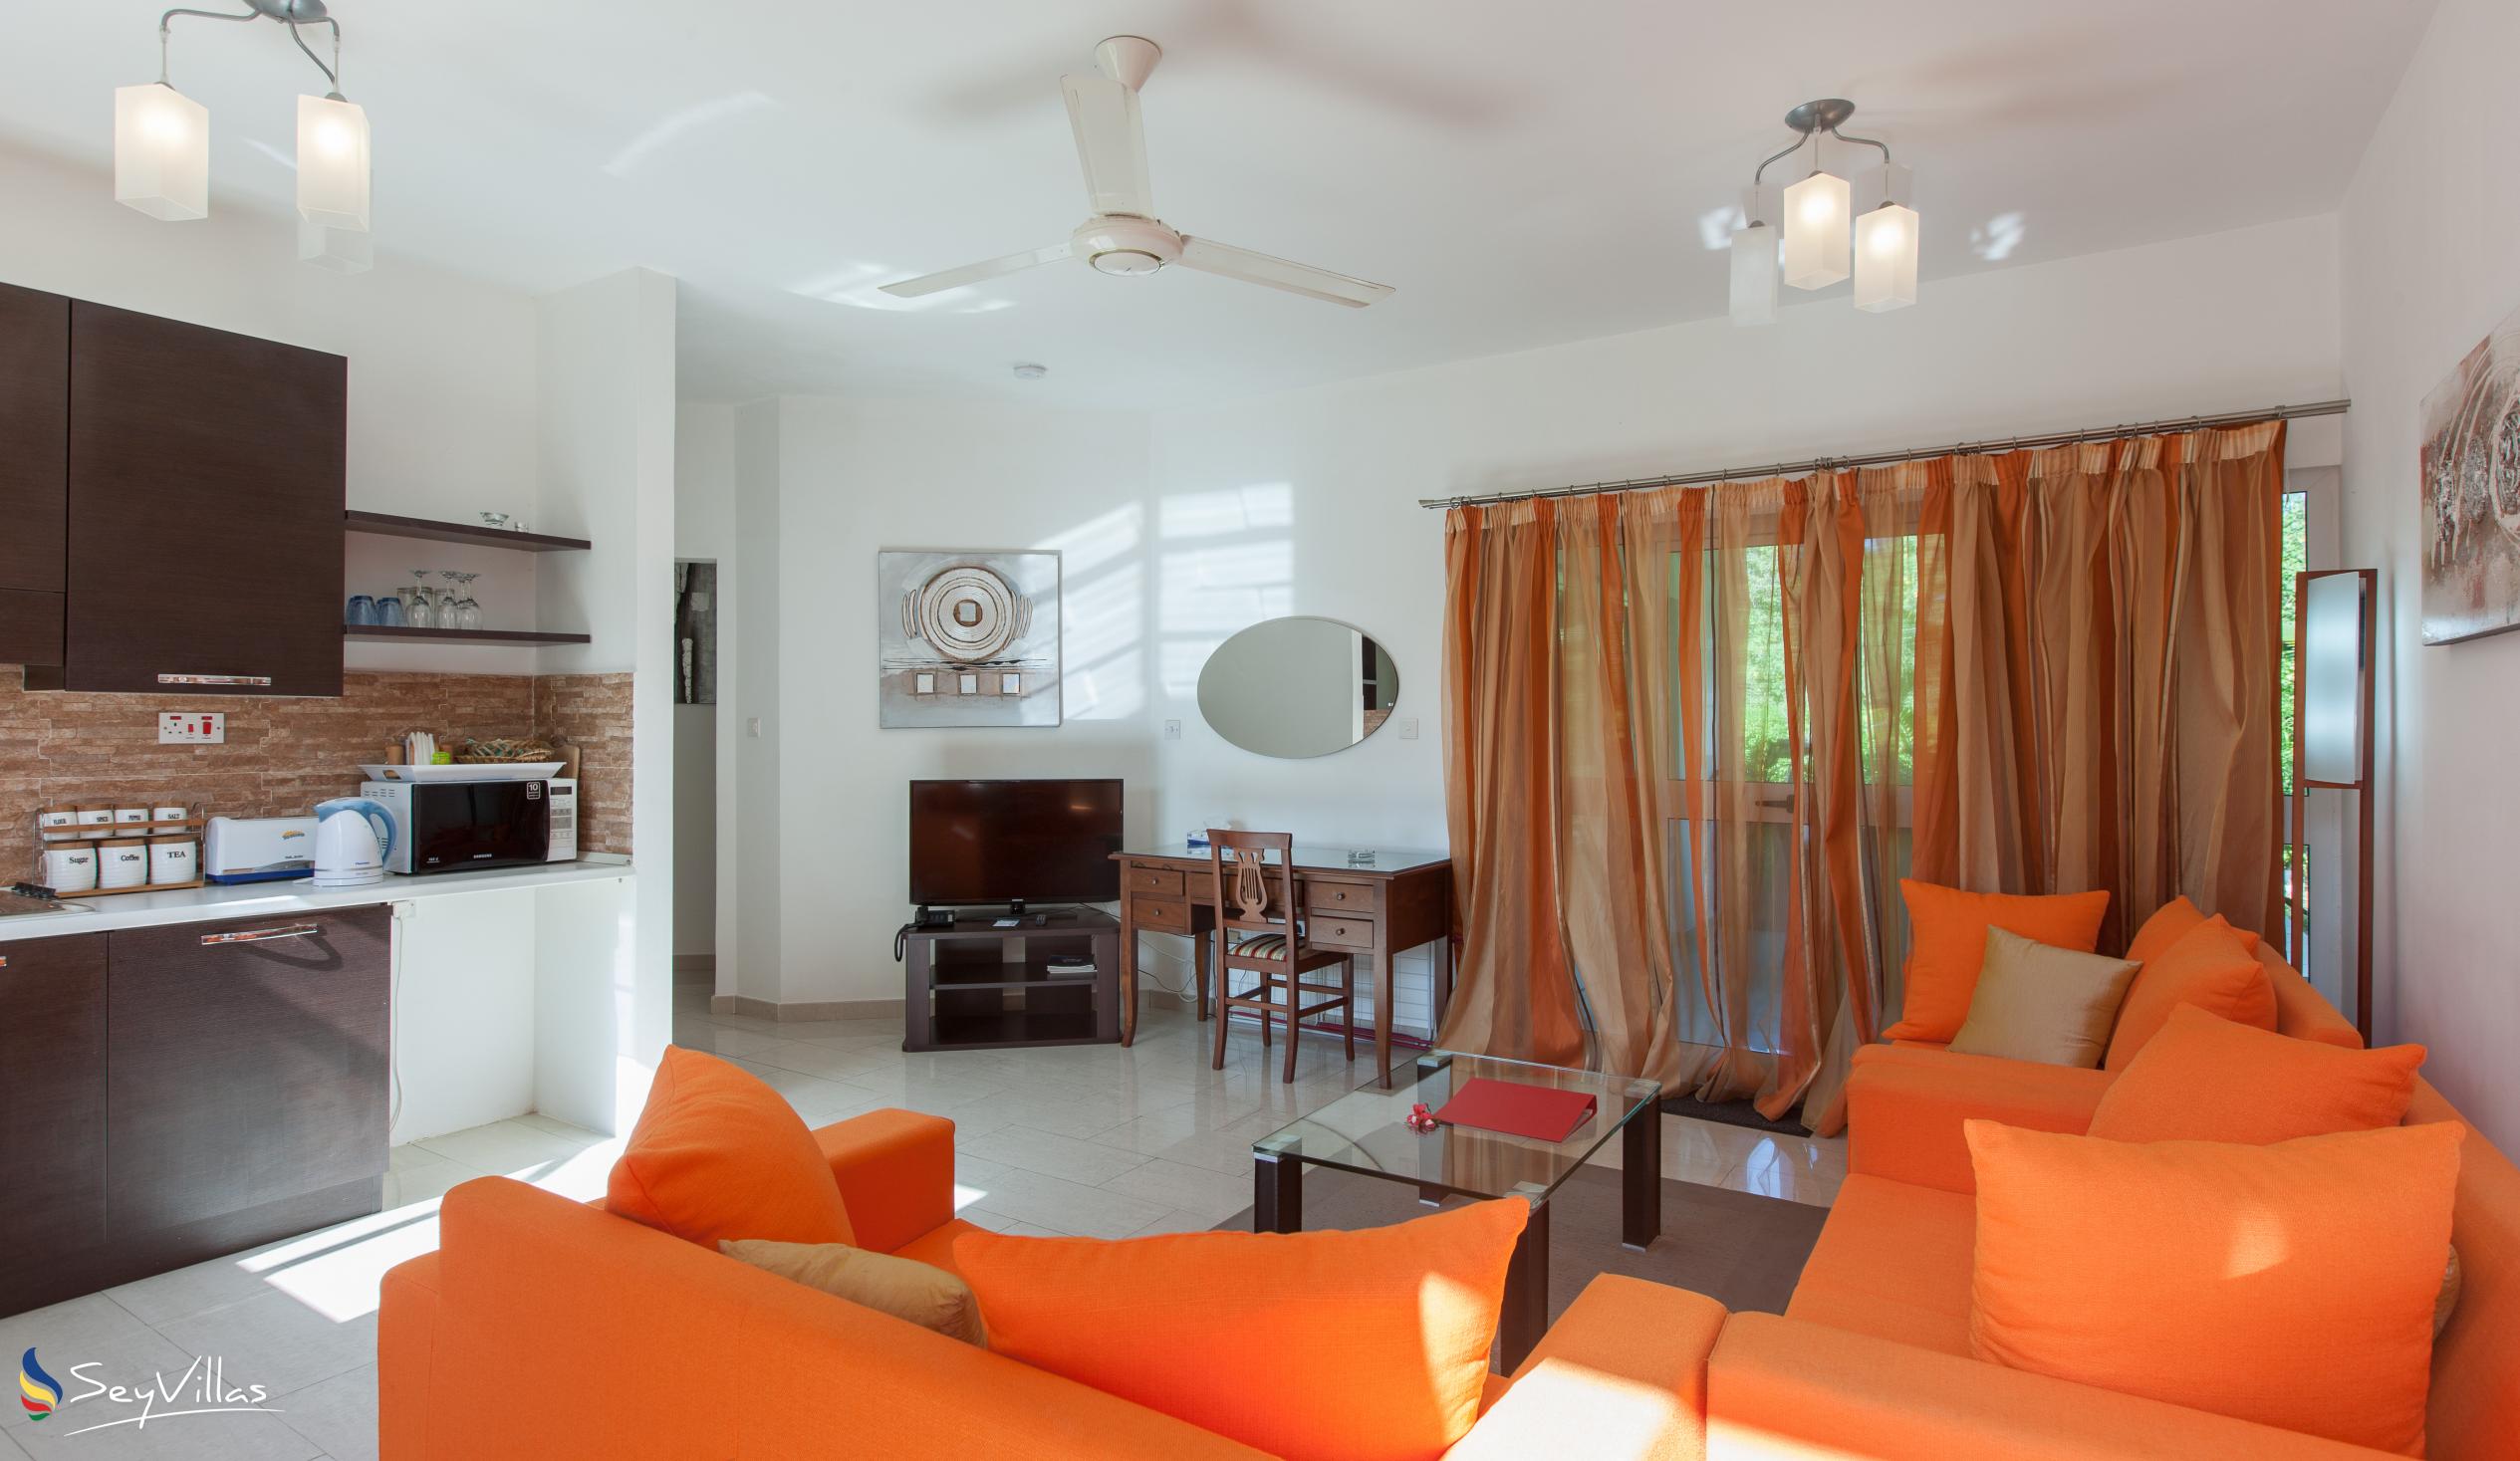 Foto 15: Cote d'Or Apartments - Appartamento familiare - Praslin (Seychelles)